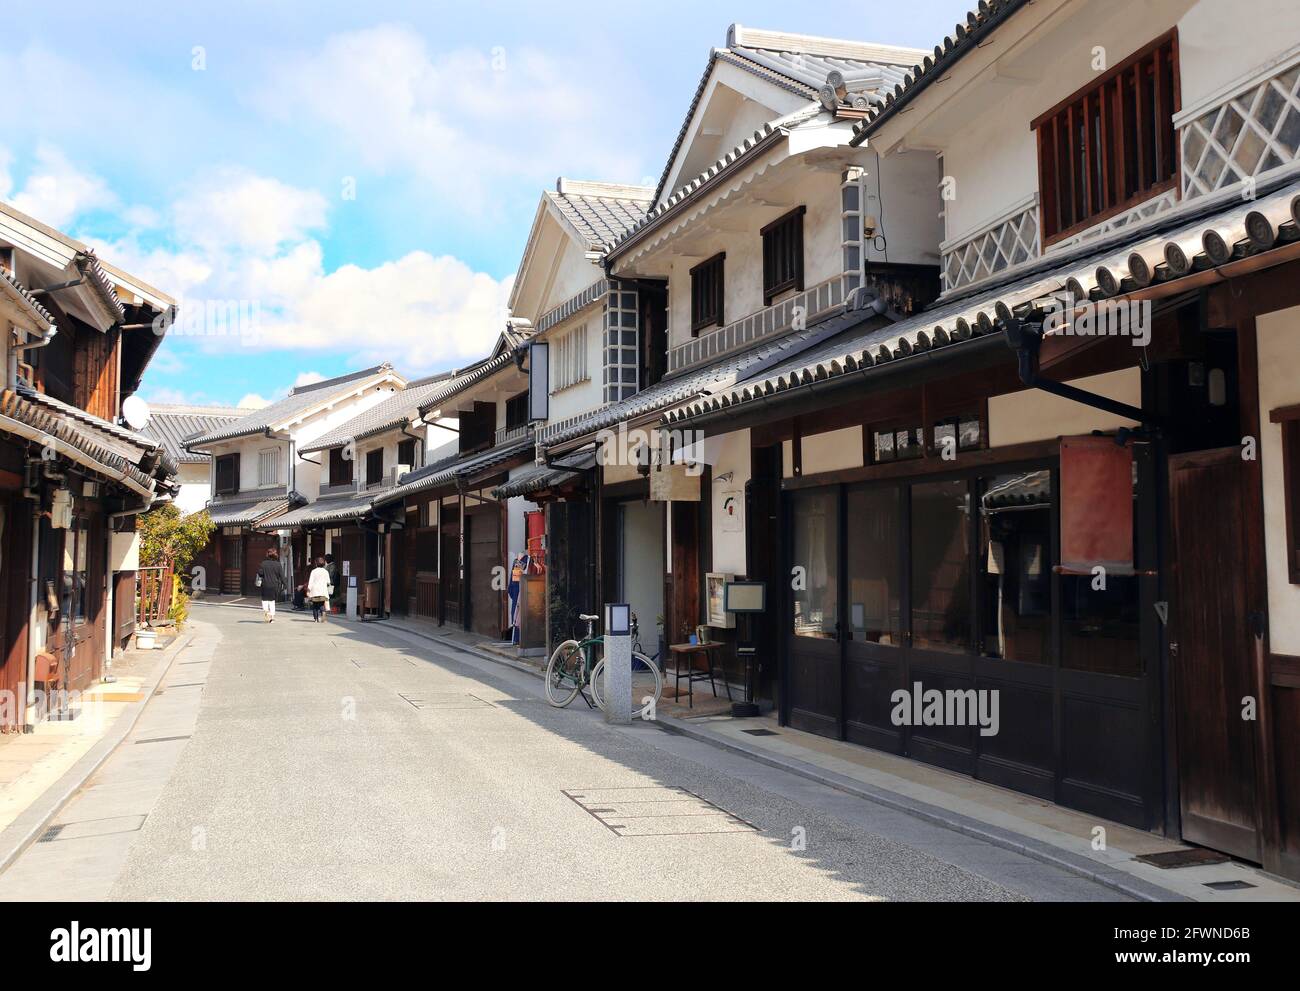 Via medievale con case tradizionali giapponesi e magazzini nel quartiere Bikan, Kurashiki city, Giappone Foto Stock